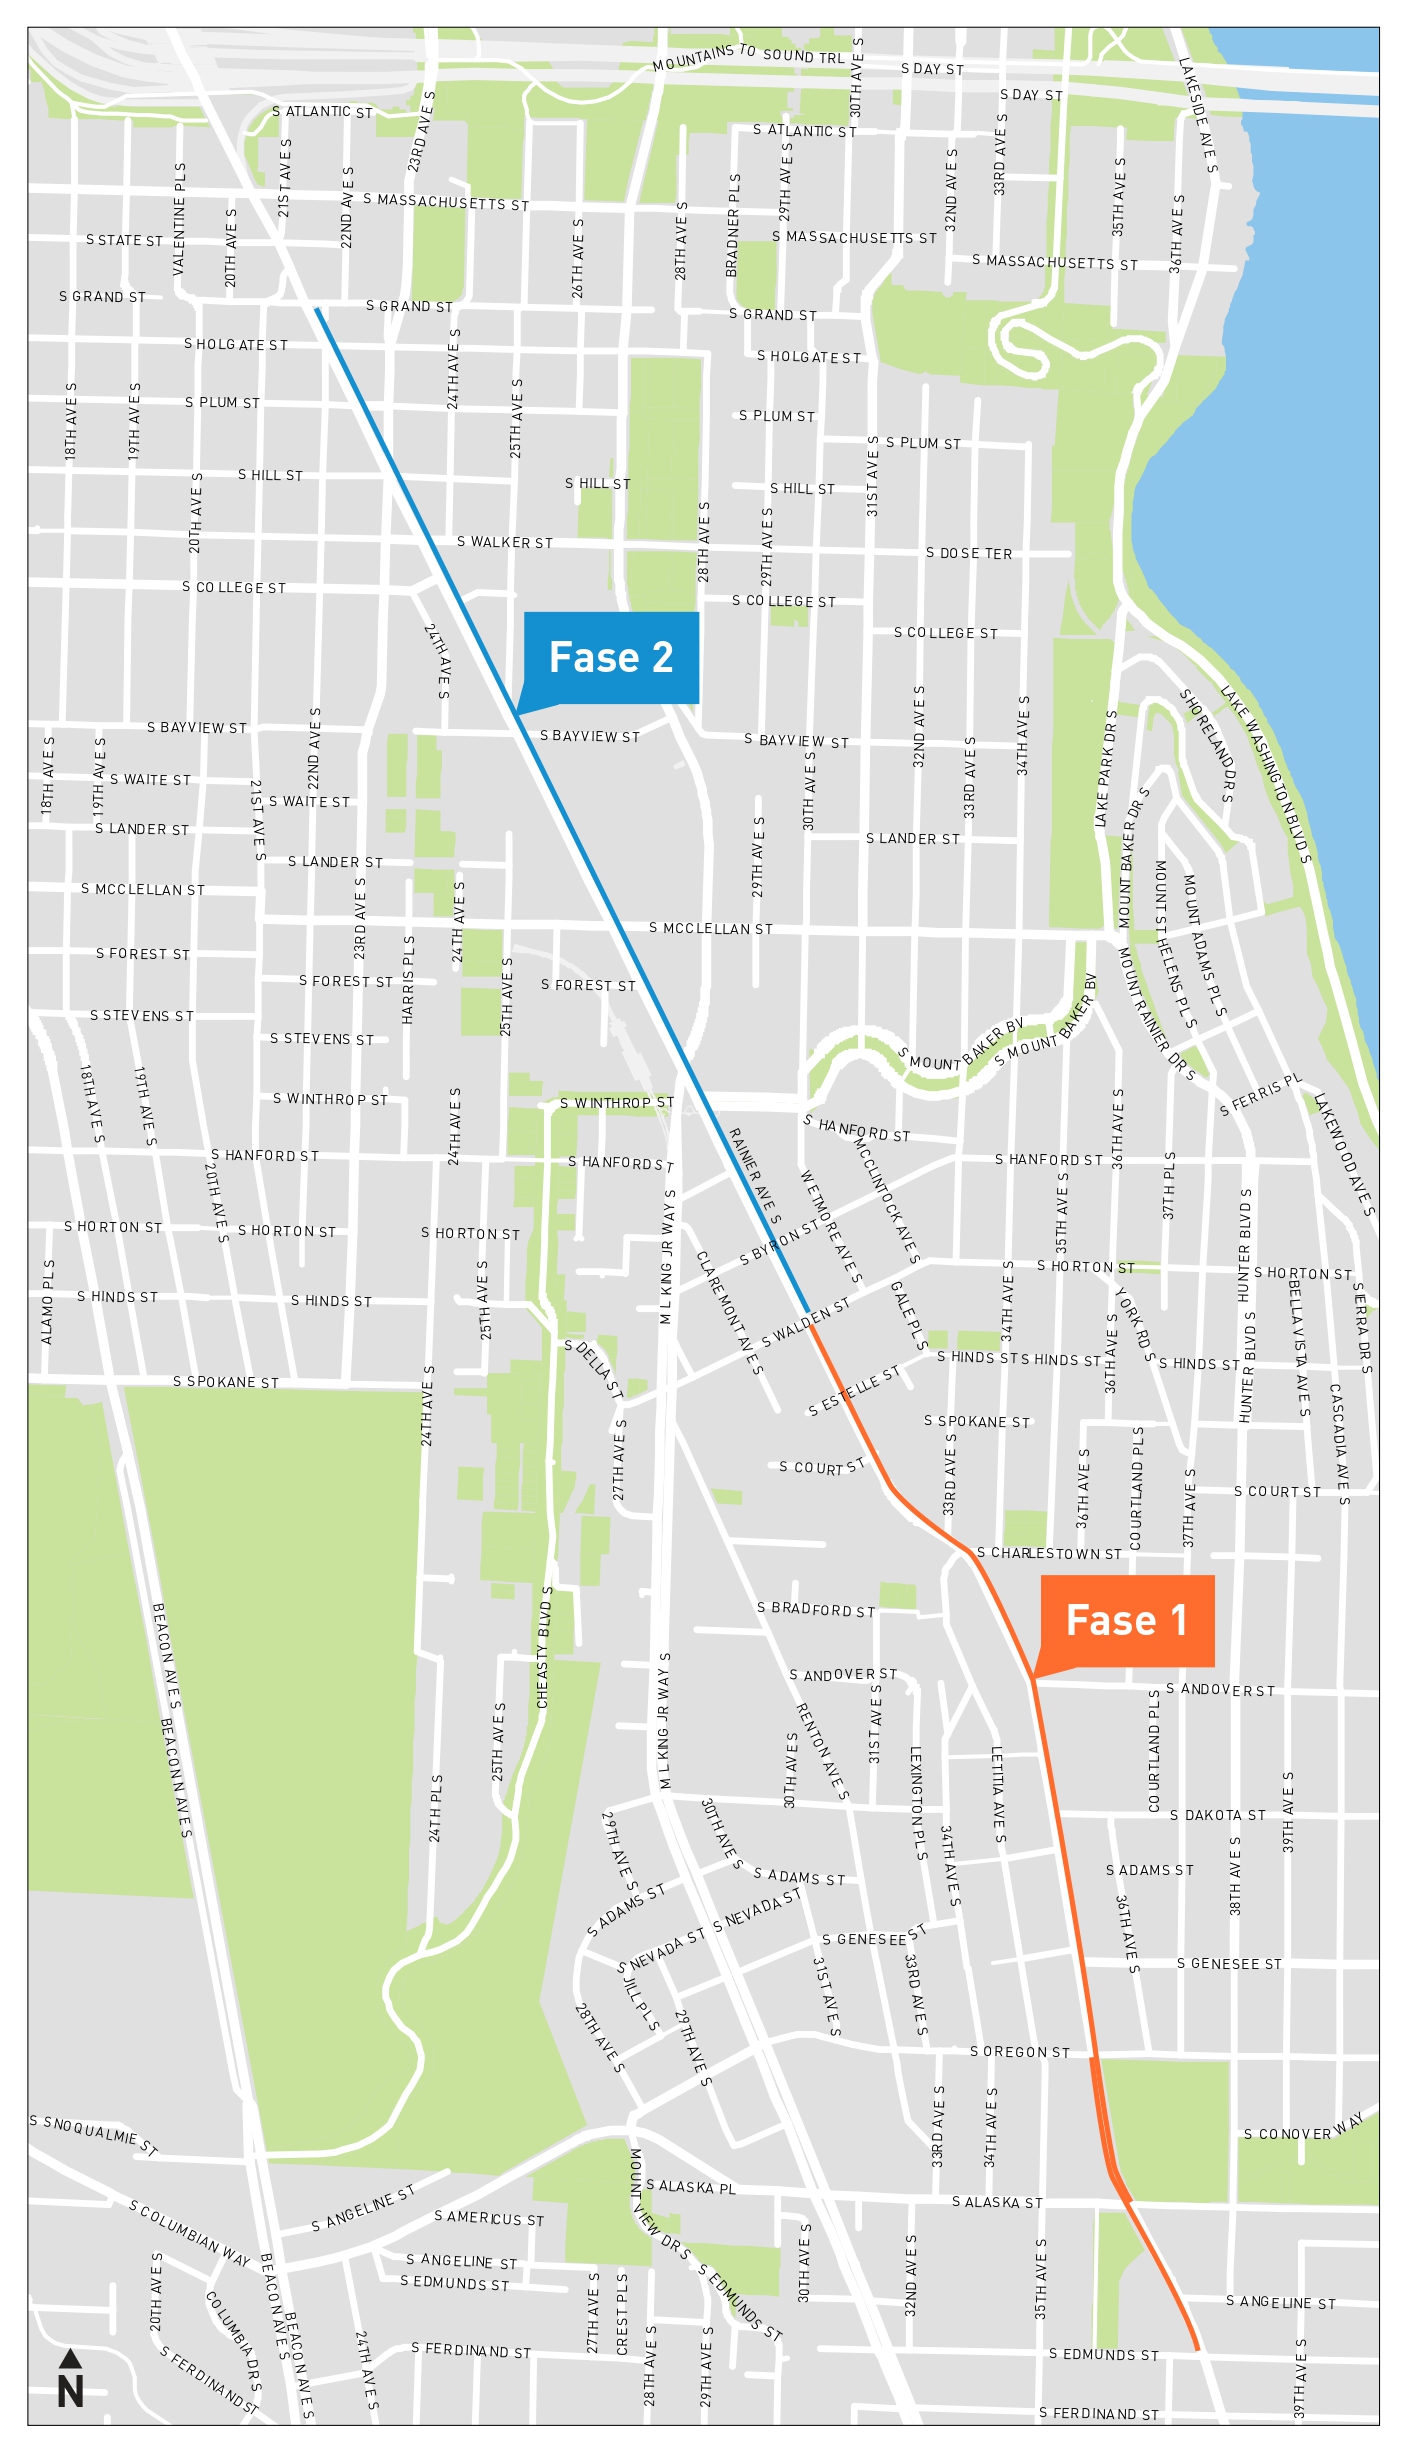 Un mapa del área del proyecto para el carril exclusivo para bus de Rainier Ave S, que muestra la Fase 1 y 2 subiendo por Rainier Ave S.